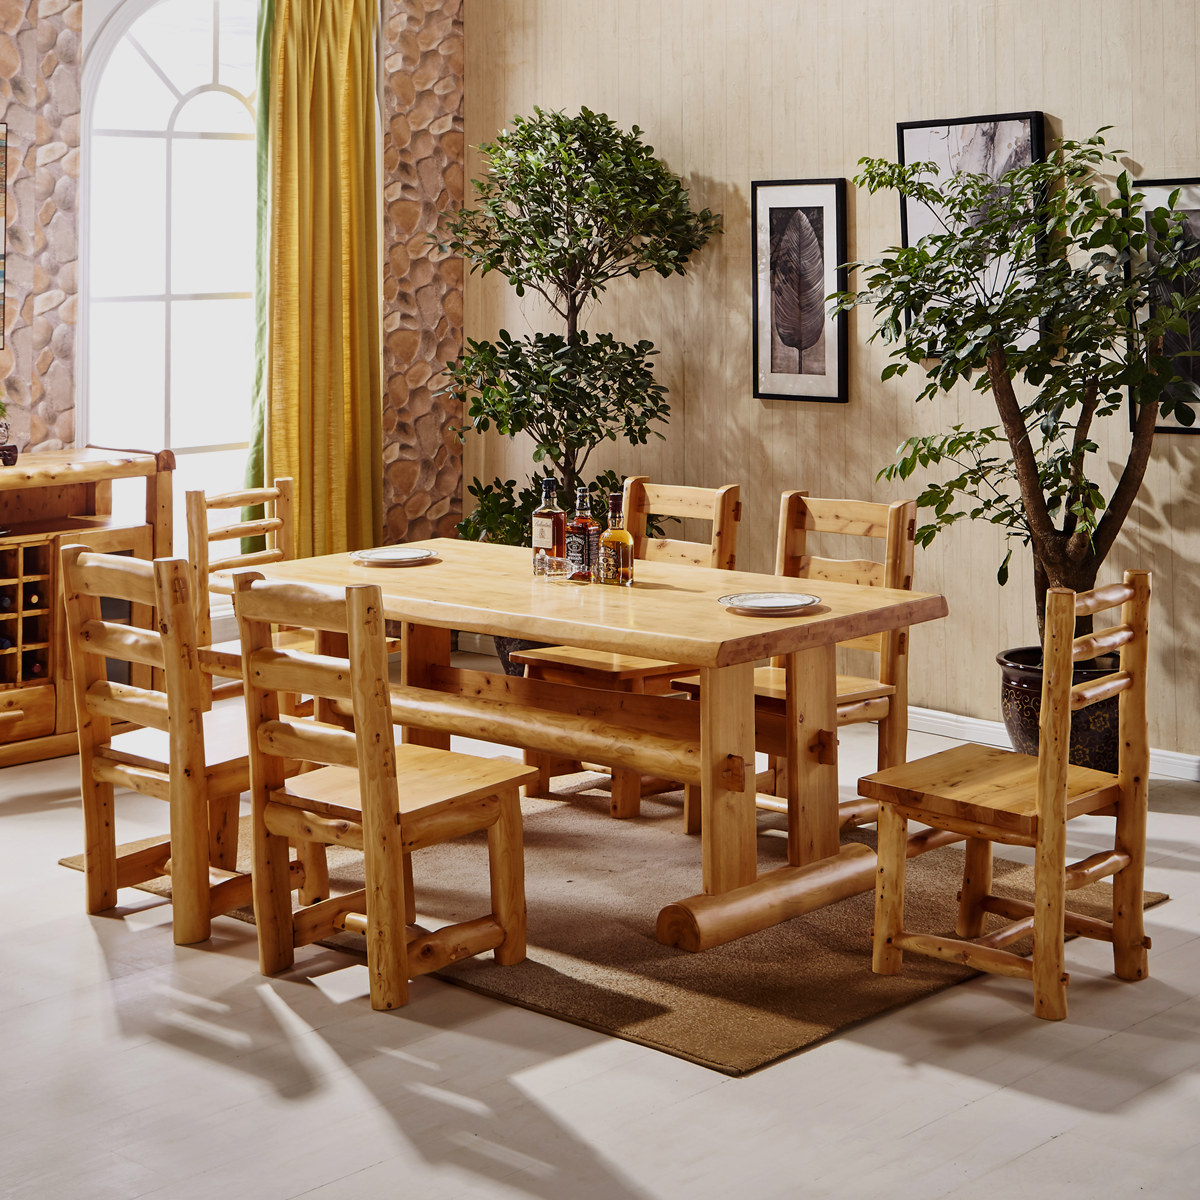 四川柏木家具原木实木桌子香柏木餐厅方桌餐桌饭桌一桌四椅六椅29